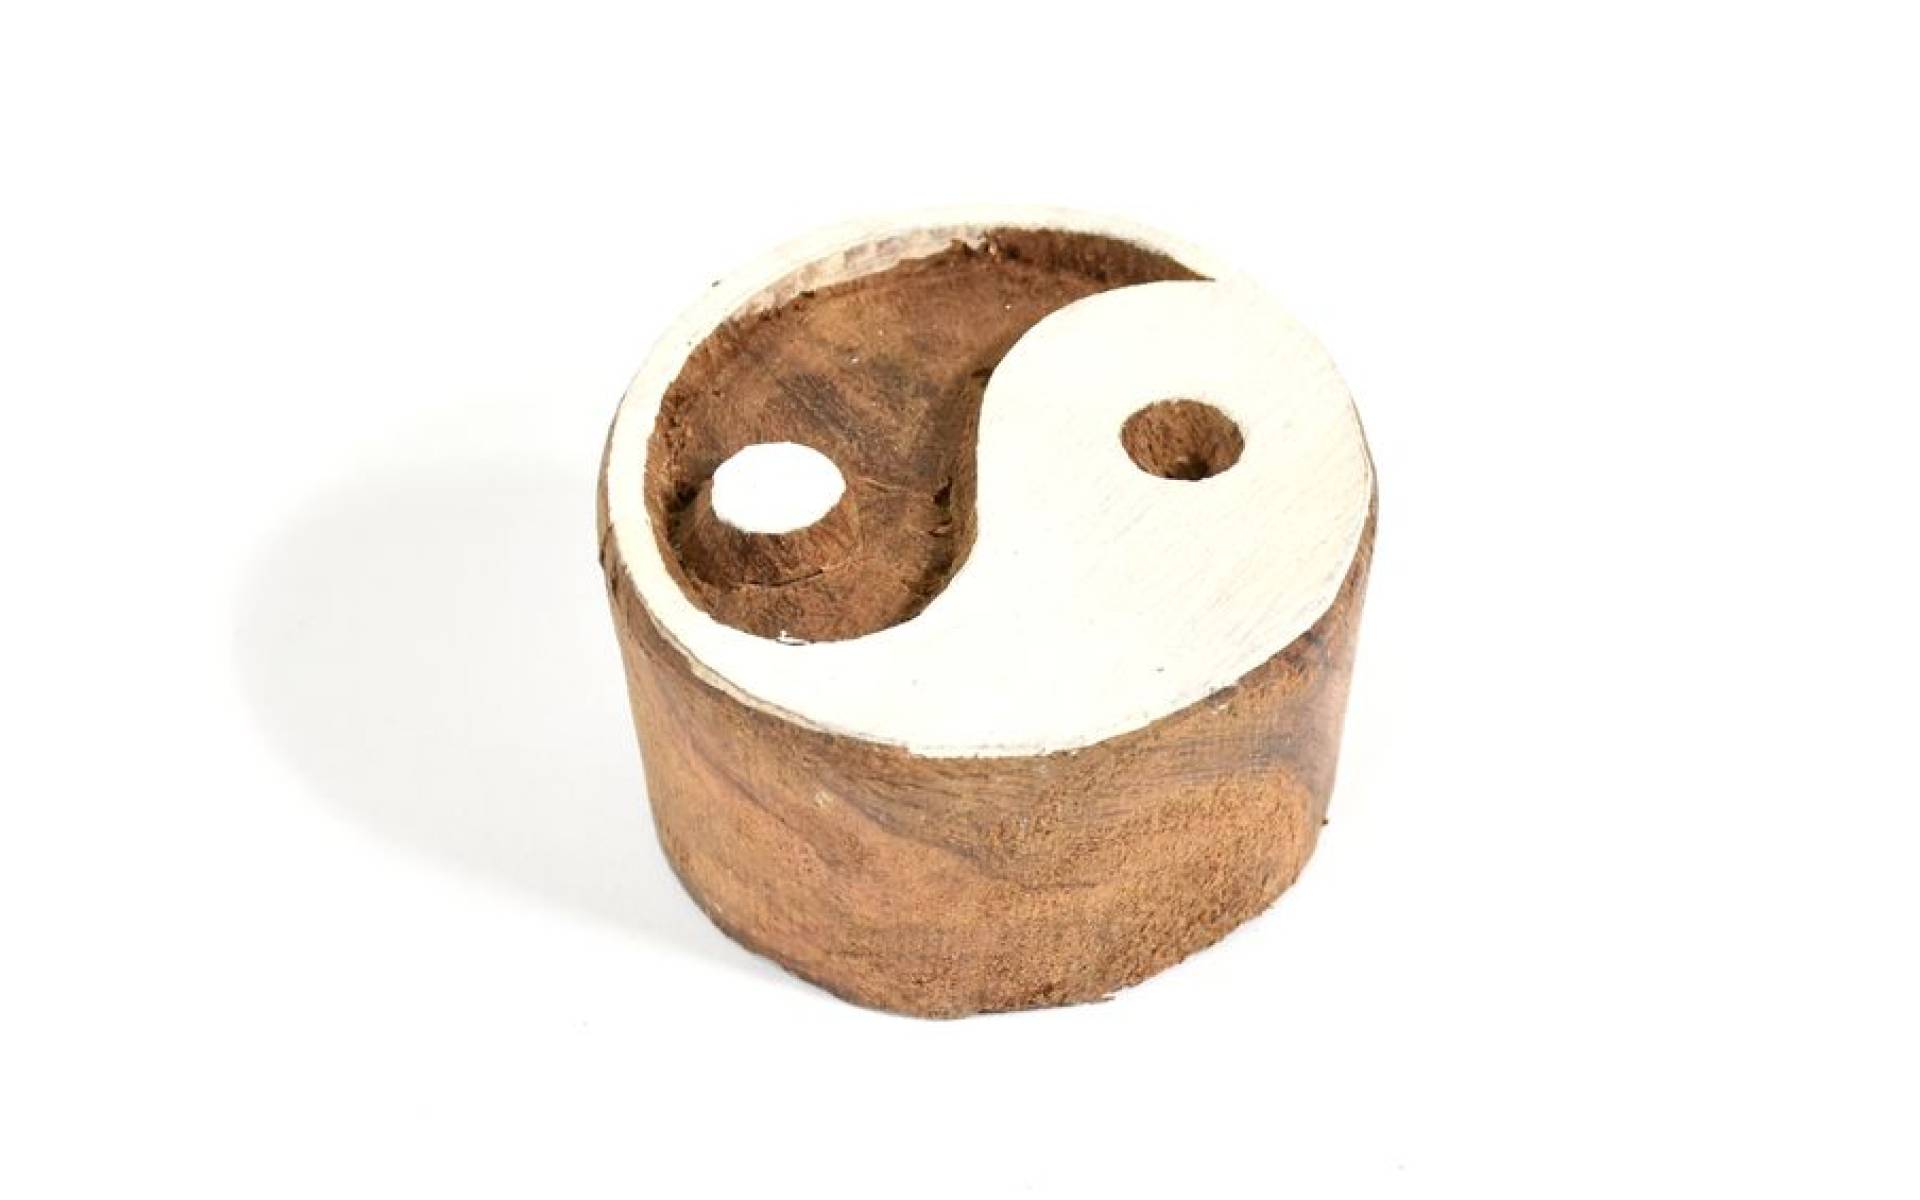 Yin/Yang - pečiatka vyrezávaná z dreva, ručné práce, 7x6cm